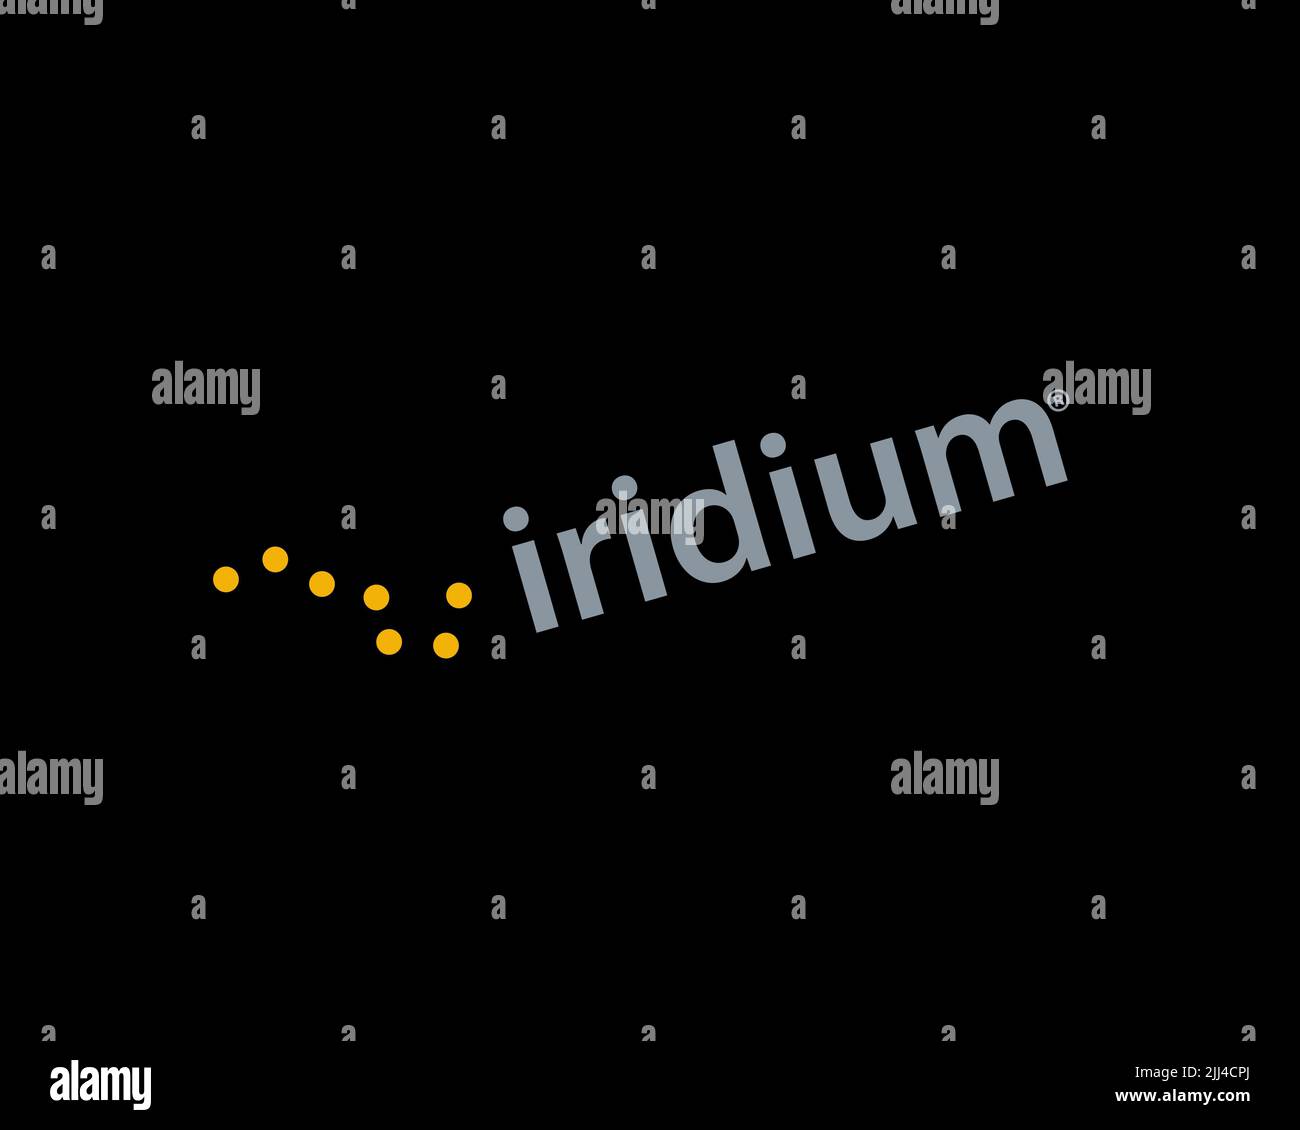 Iridium Communications, rotated logo, black background Stock Photo